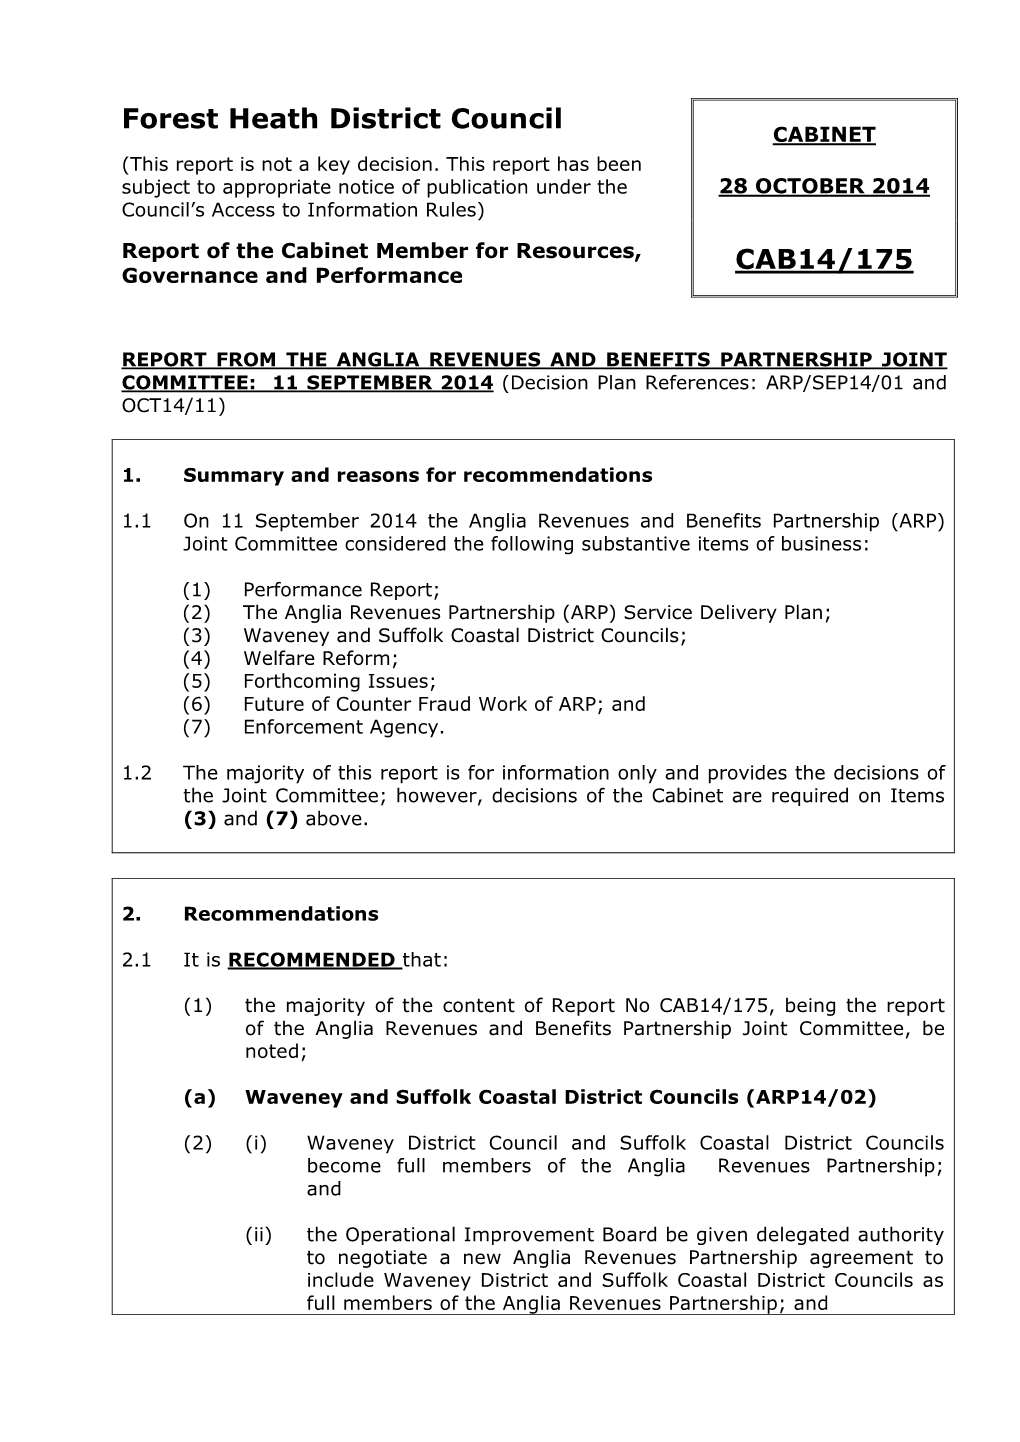 Forest Heath District Council CAB14/175